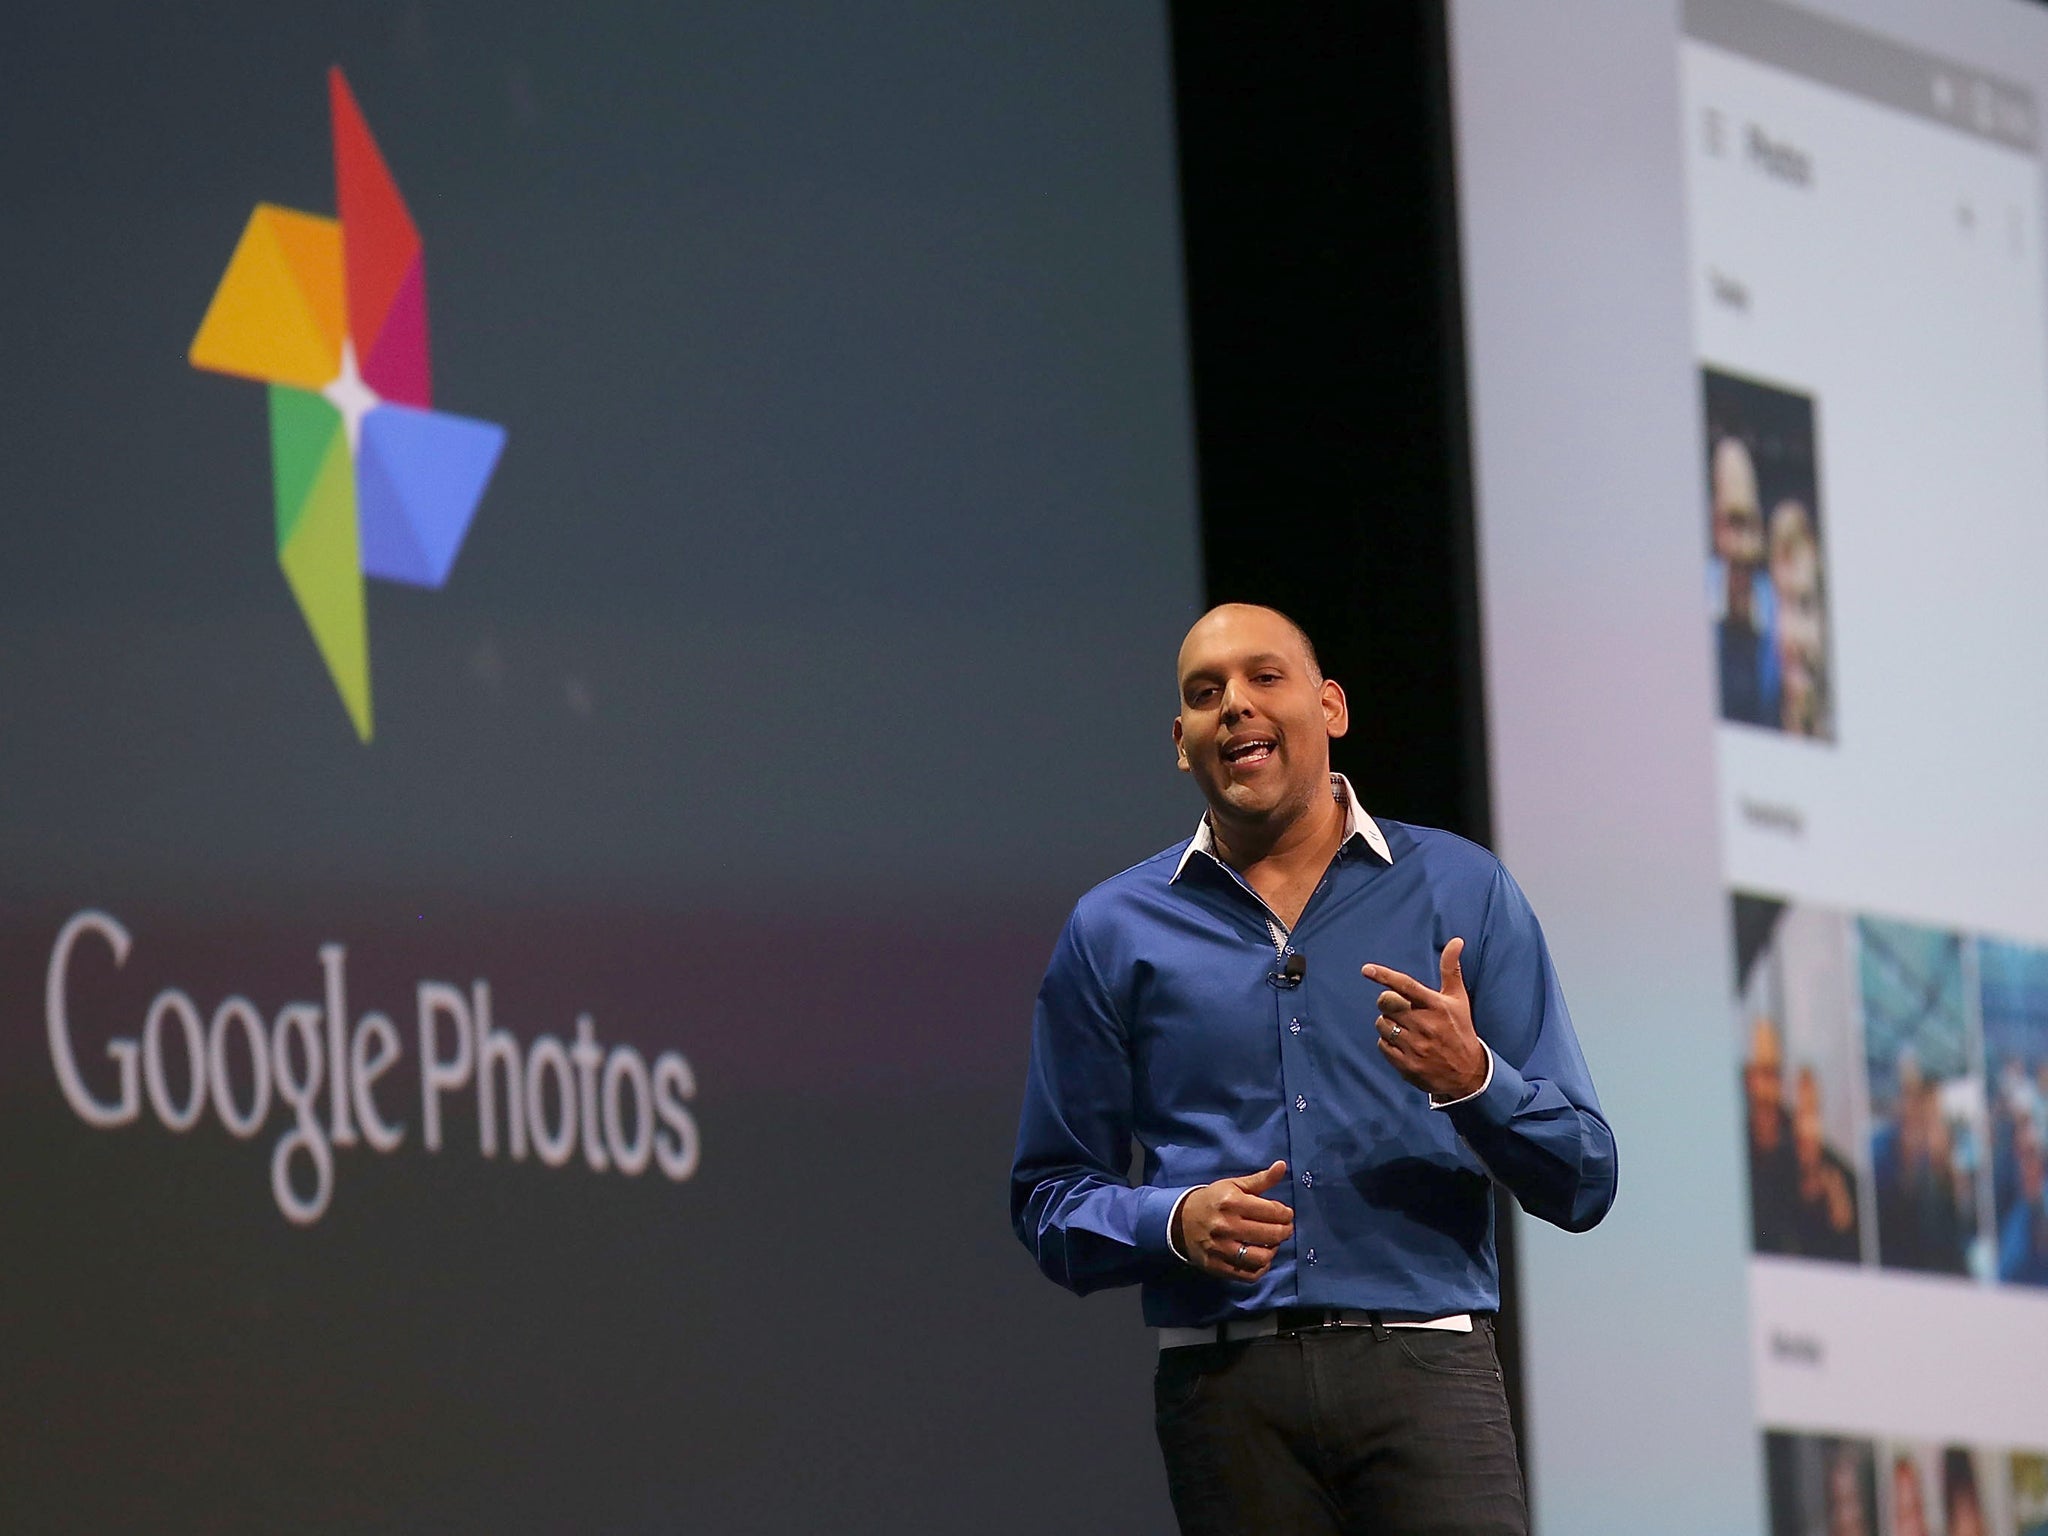 Google Photos director Anil Sabharwal announces Google Photos during the 2015 Google I/O conference on May 28, 2015 in San Francisco, California